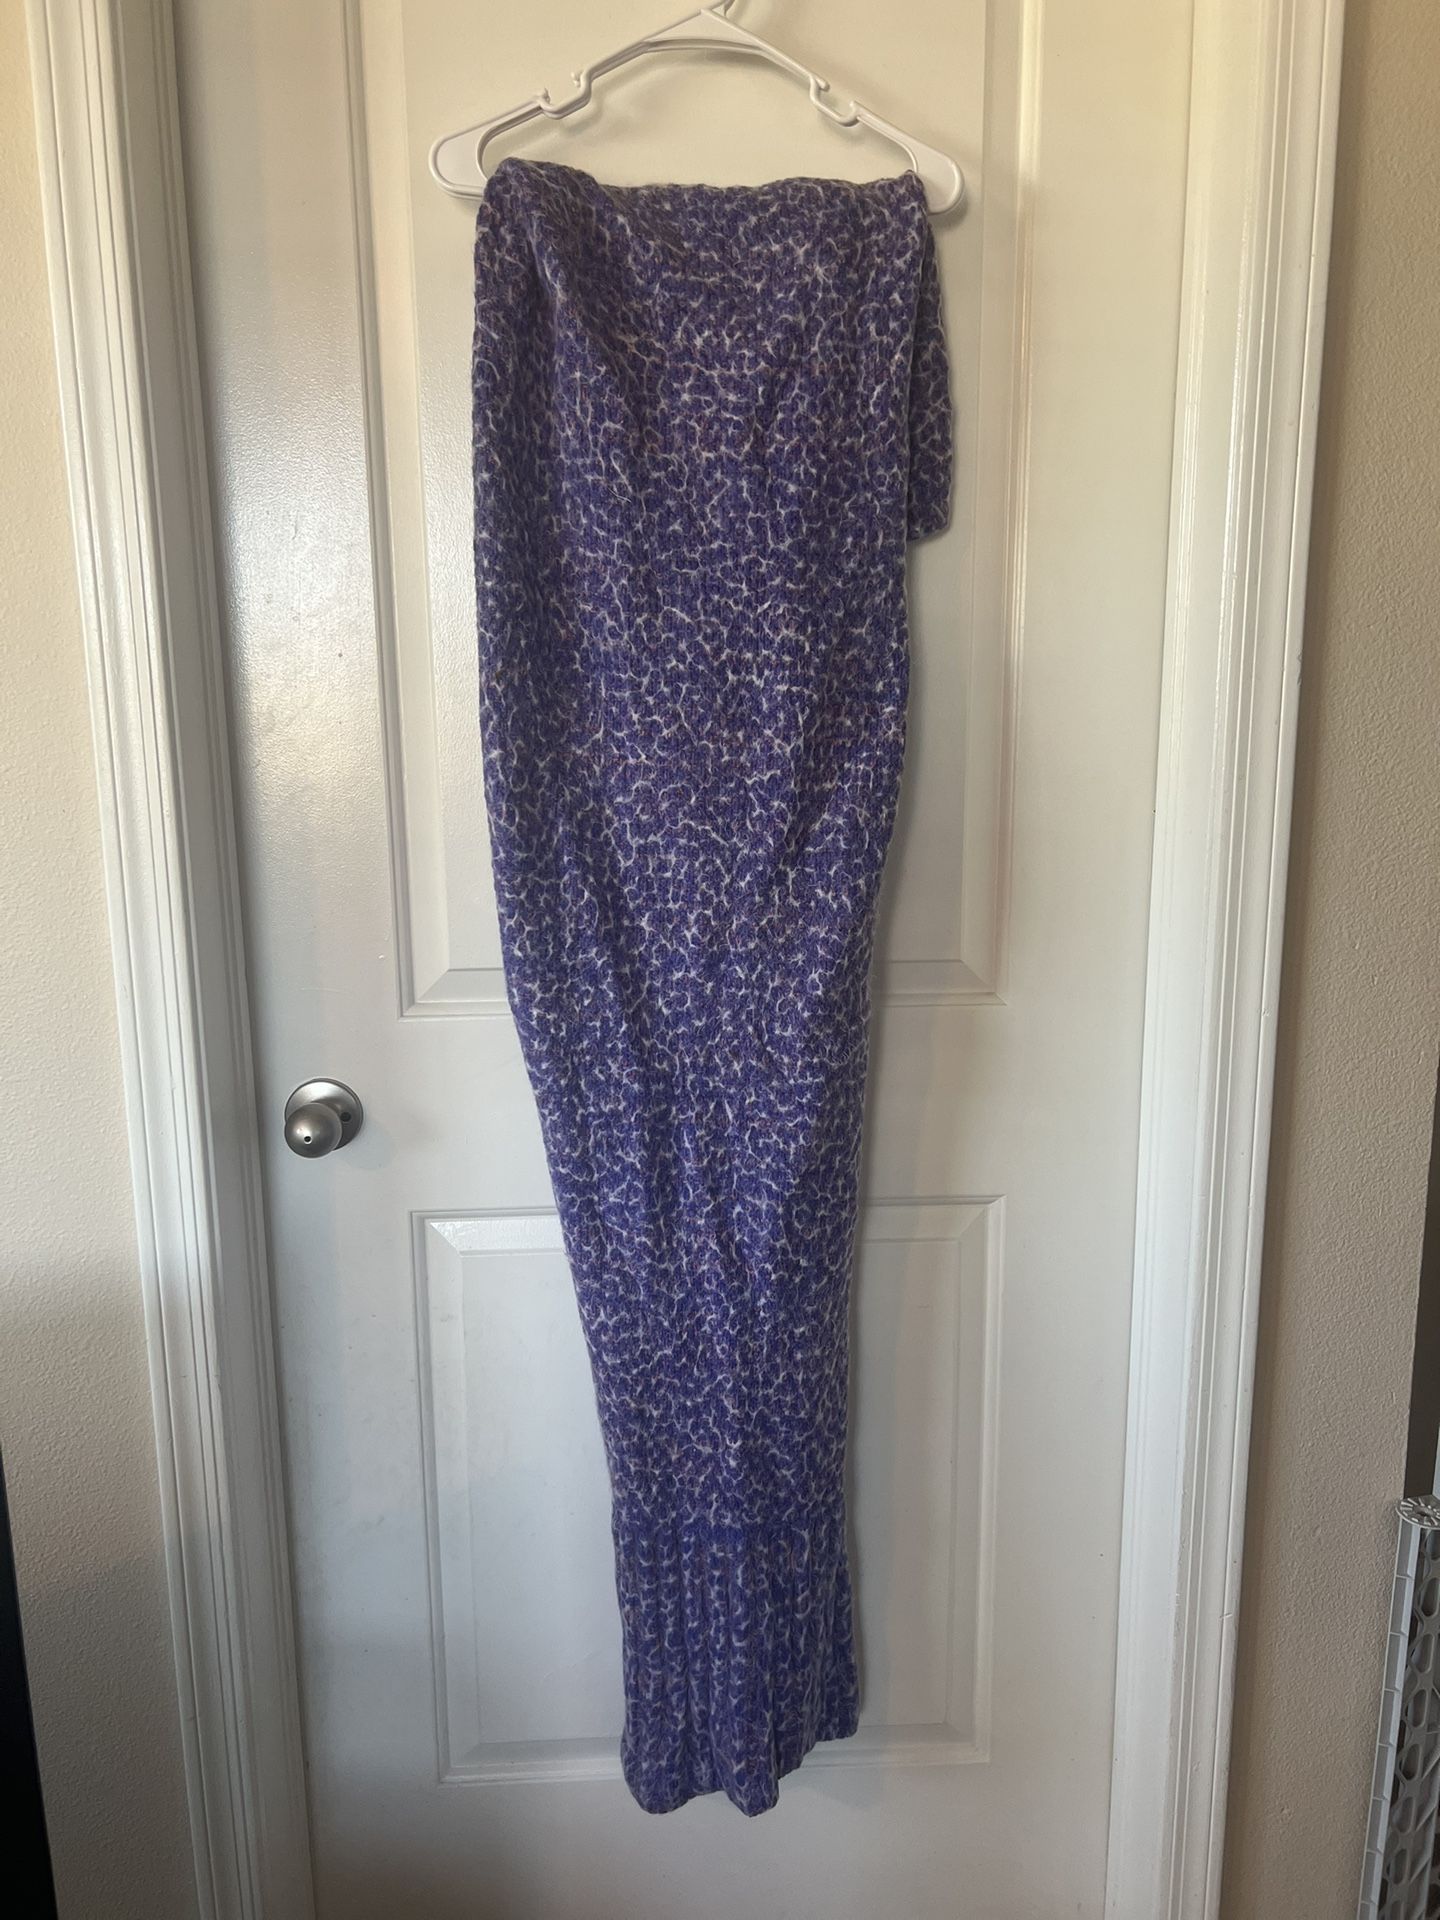 Purple Mermaid Tail Blanket